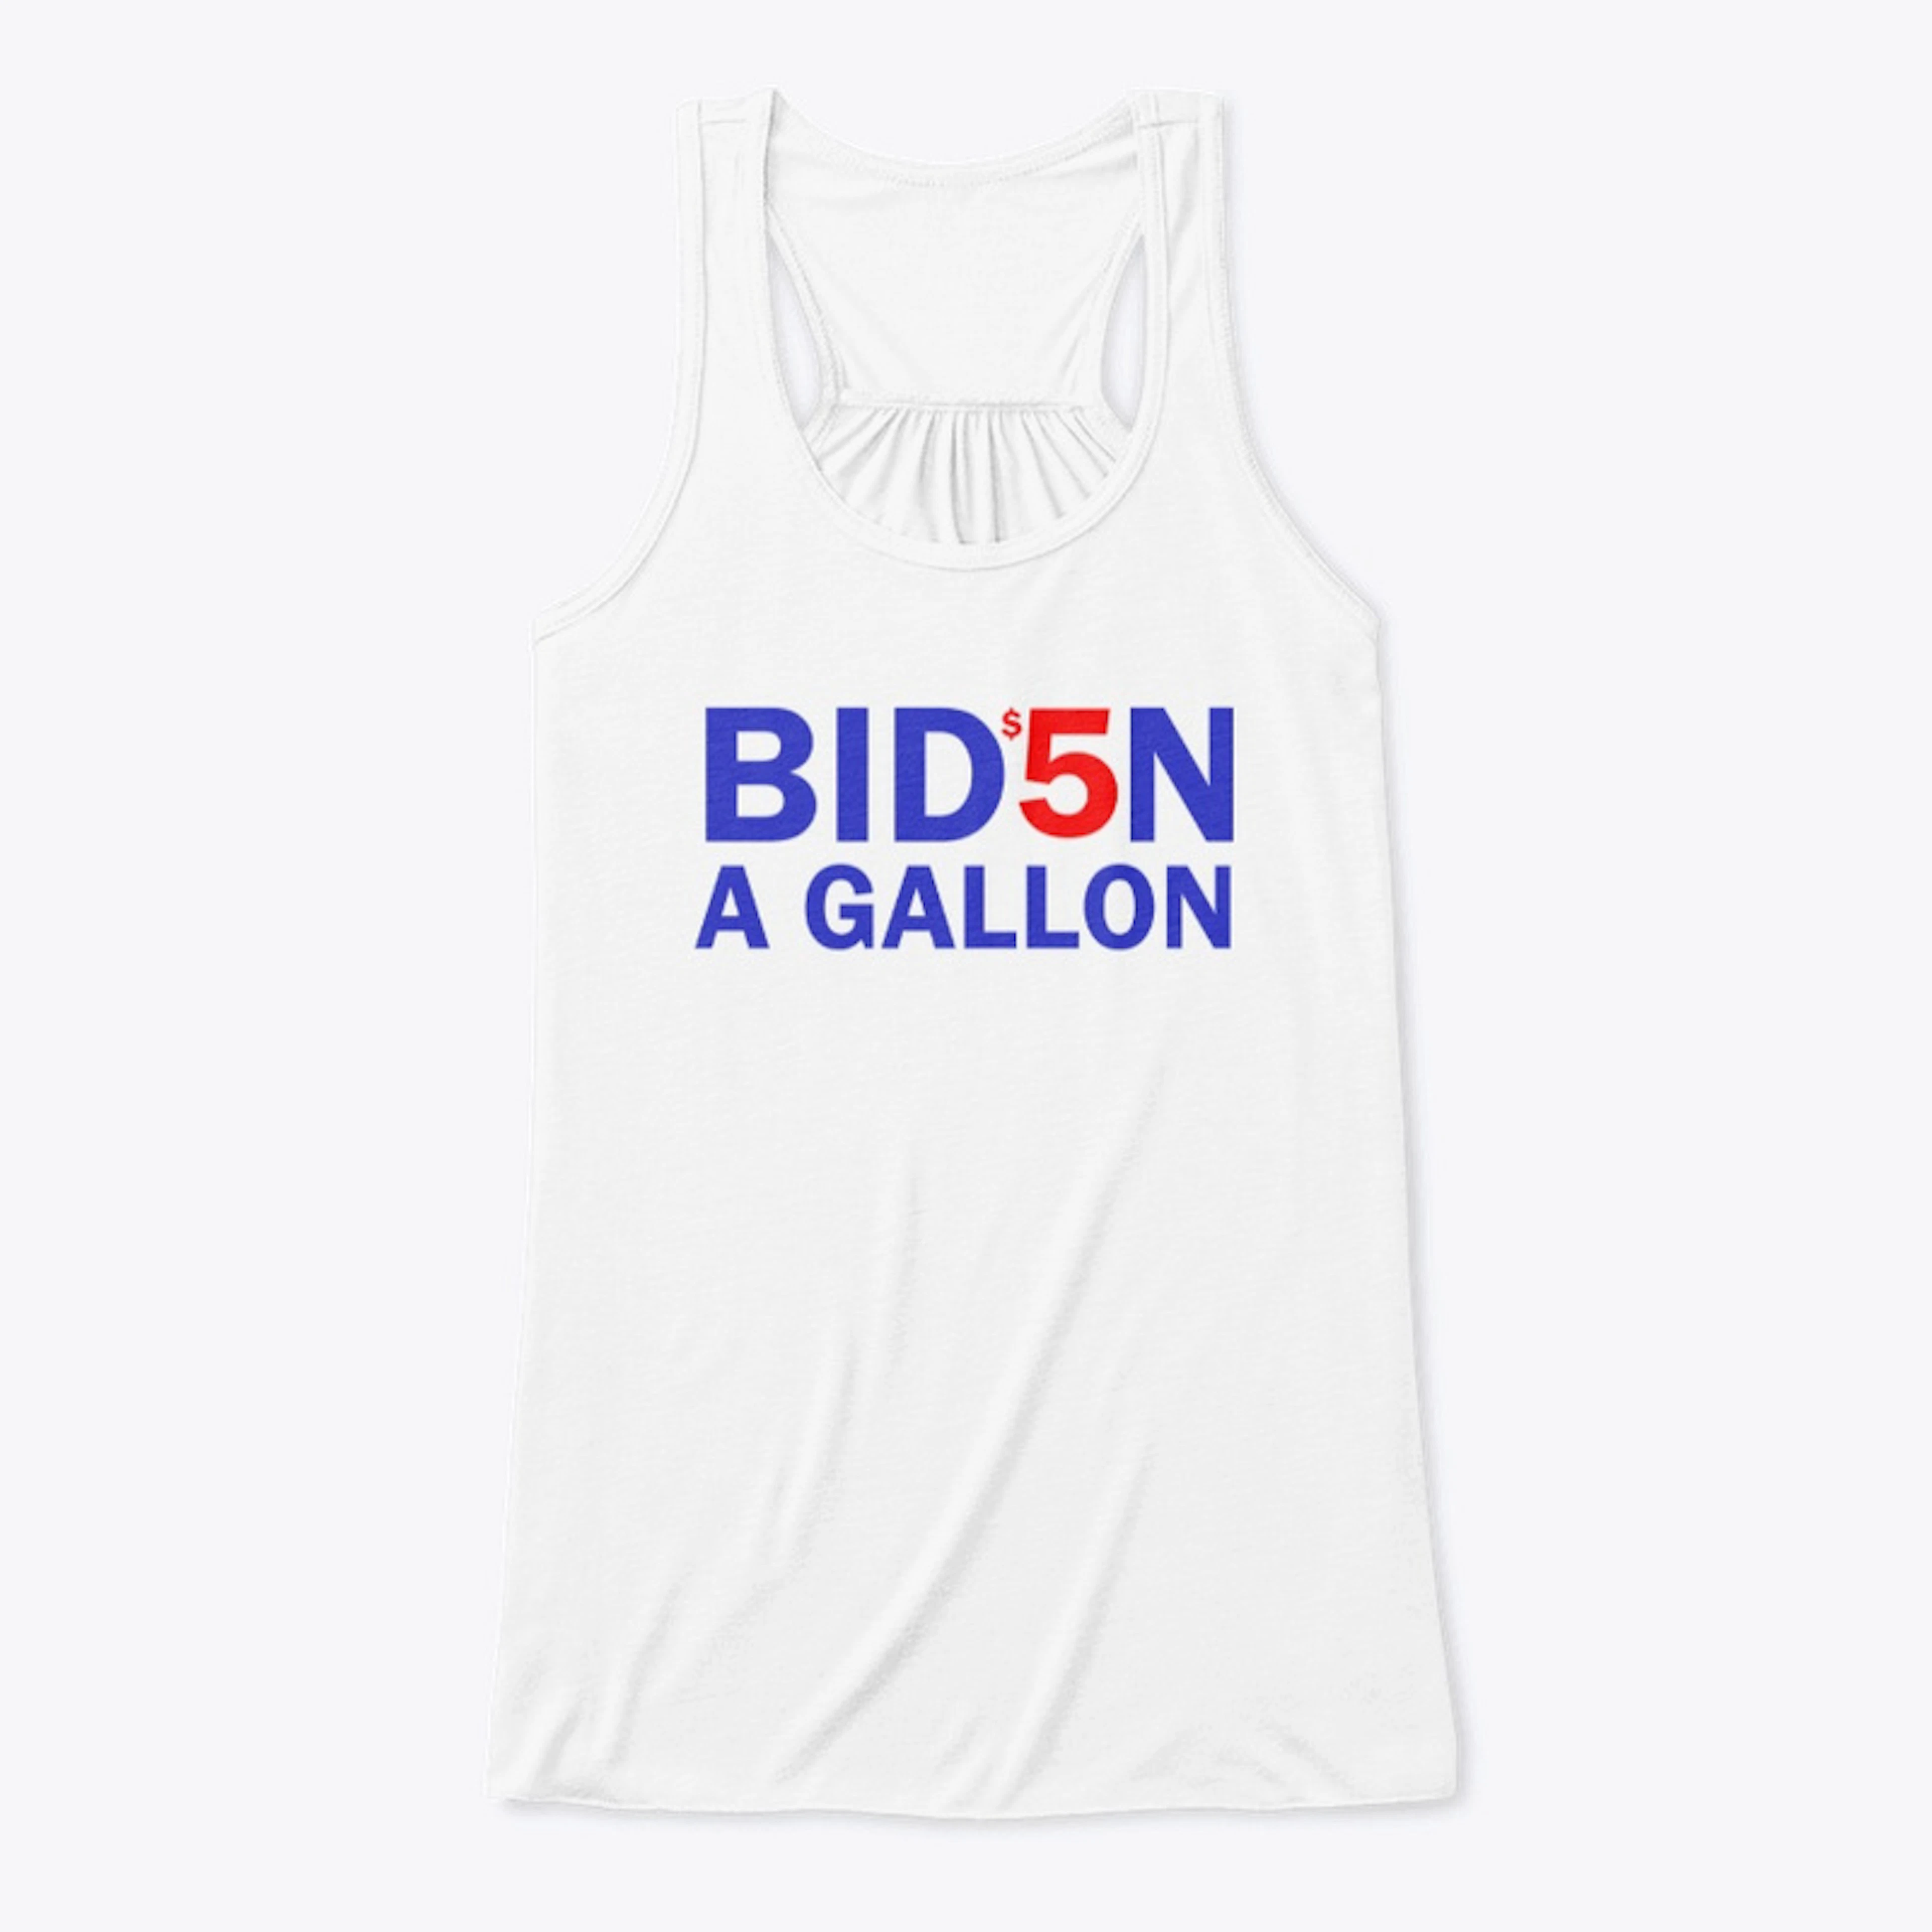 $5 a Gallon Biden